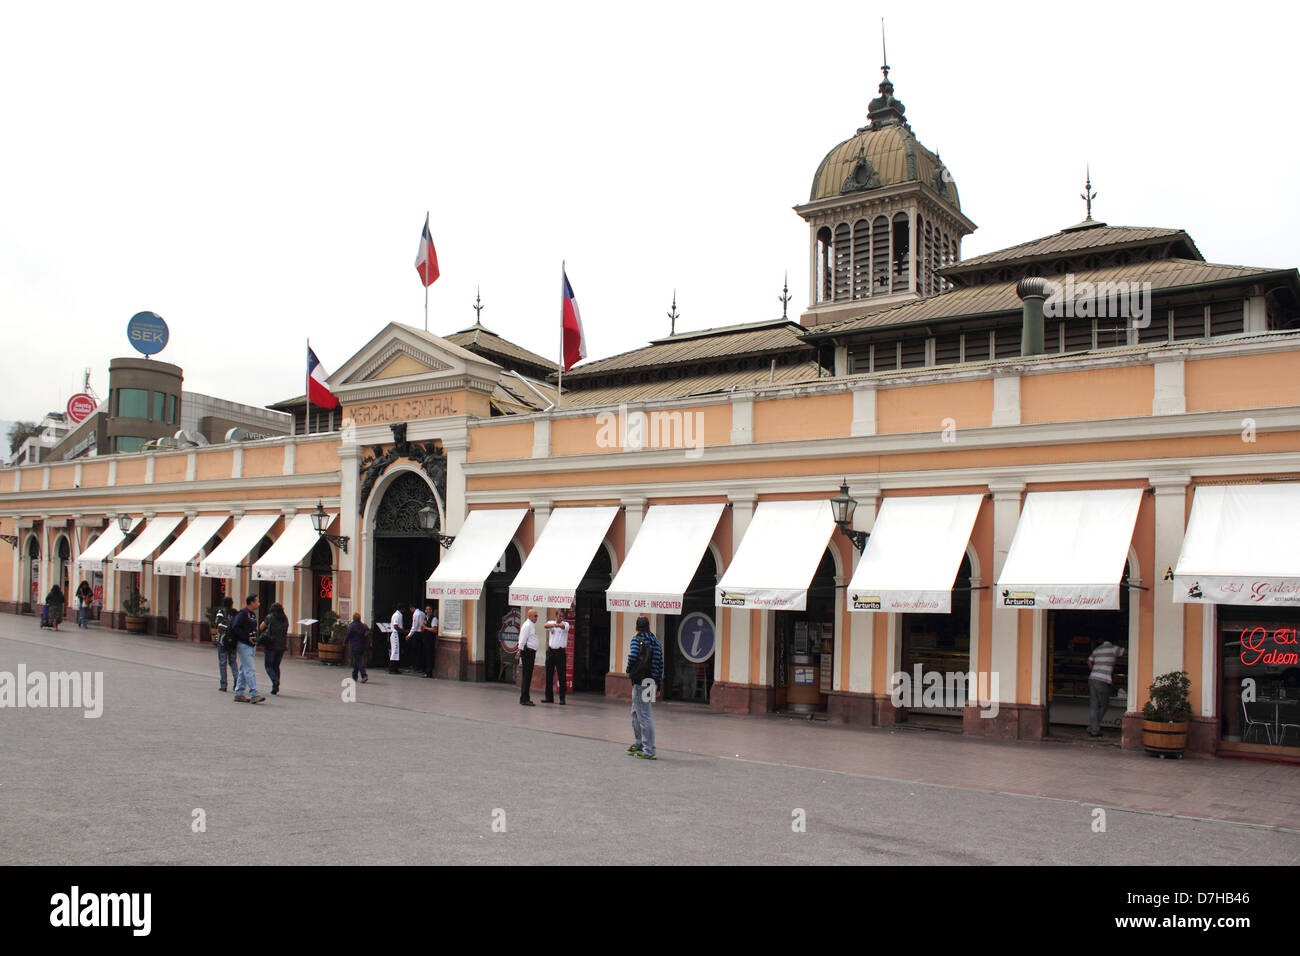 Santiago de Chile Mercado Central central market Stock Photo